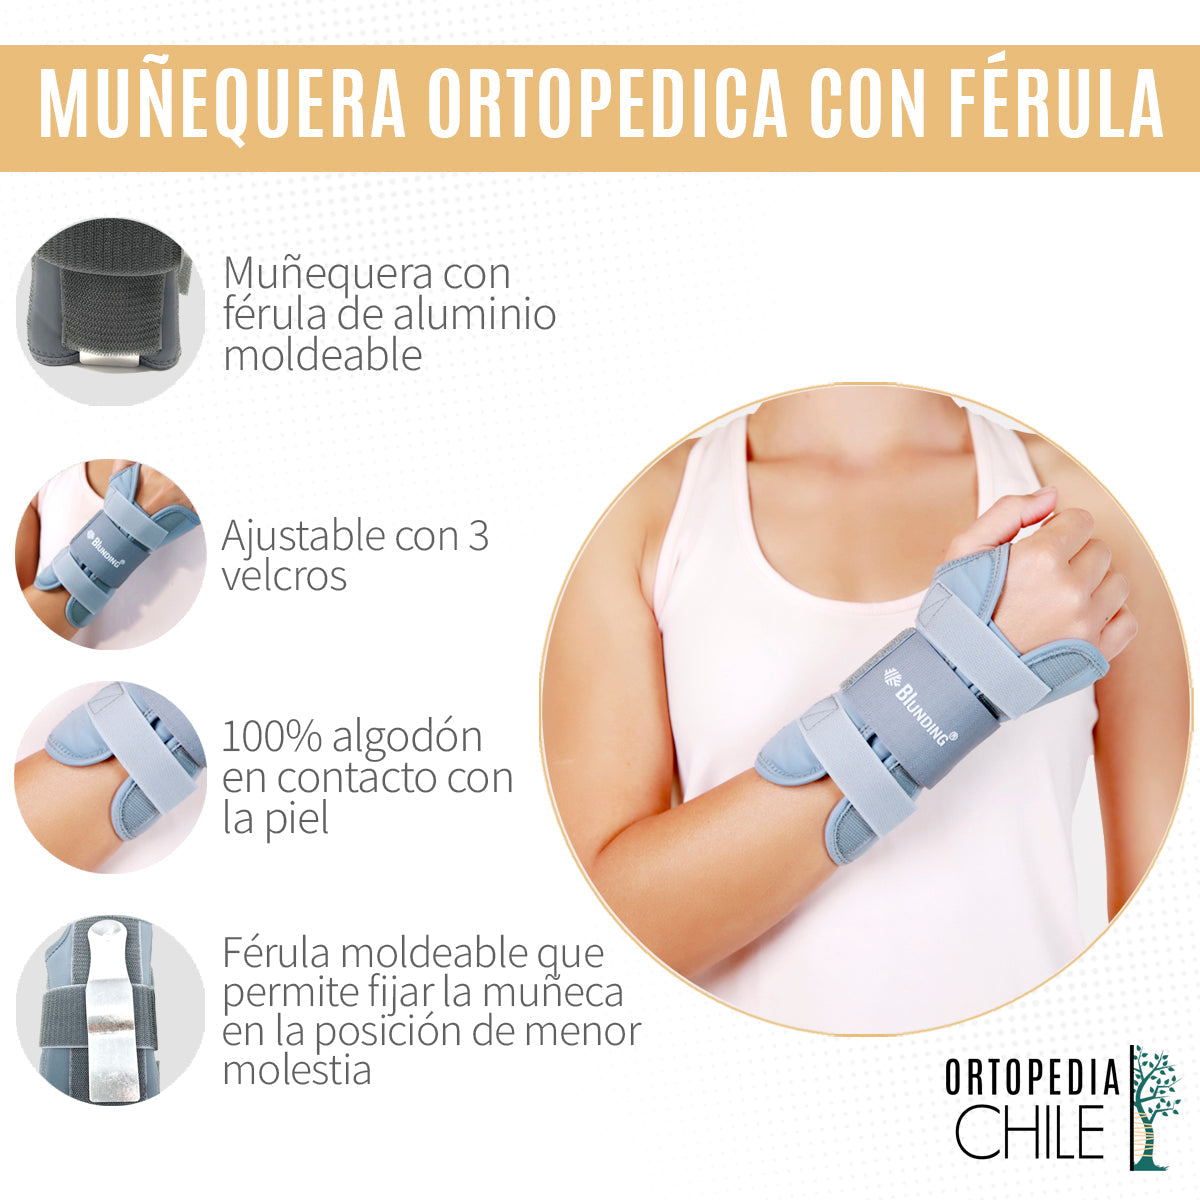 Muñequera Ortopédica con Férula